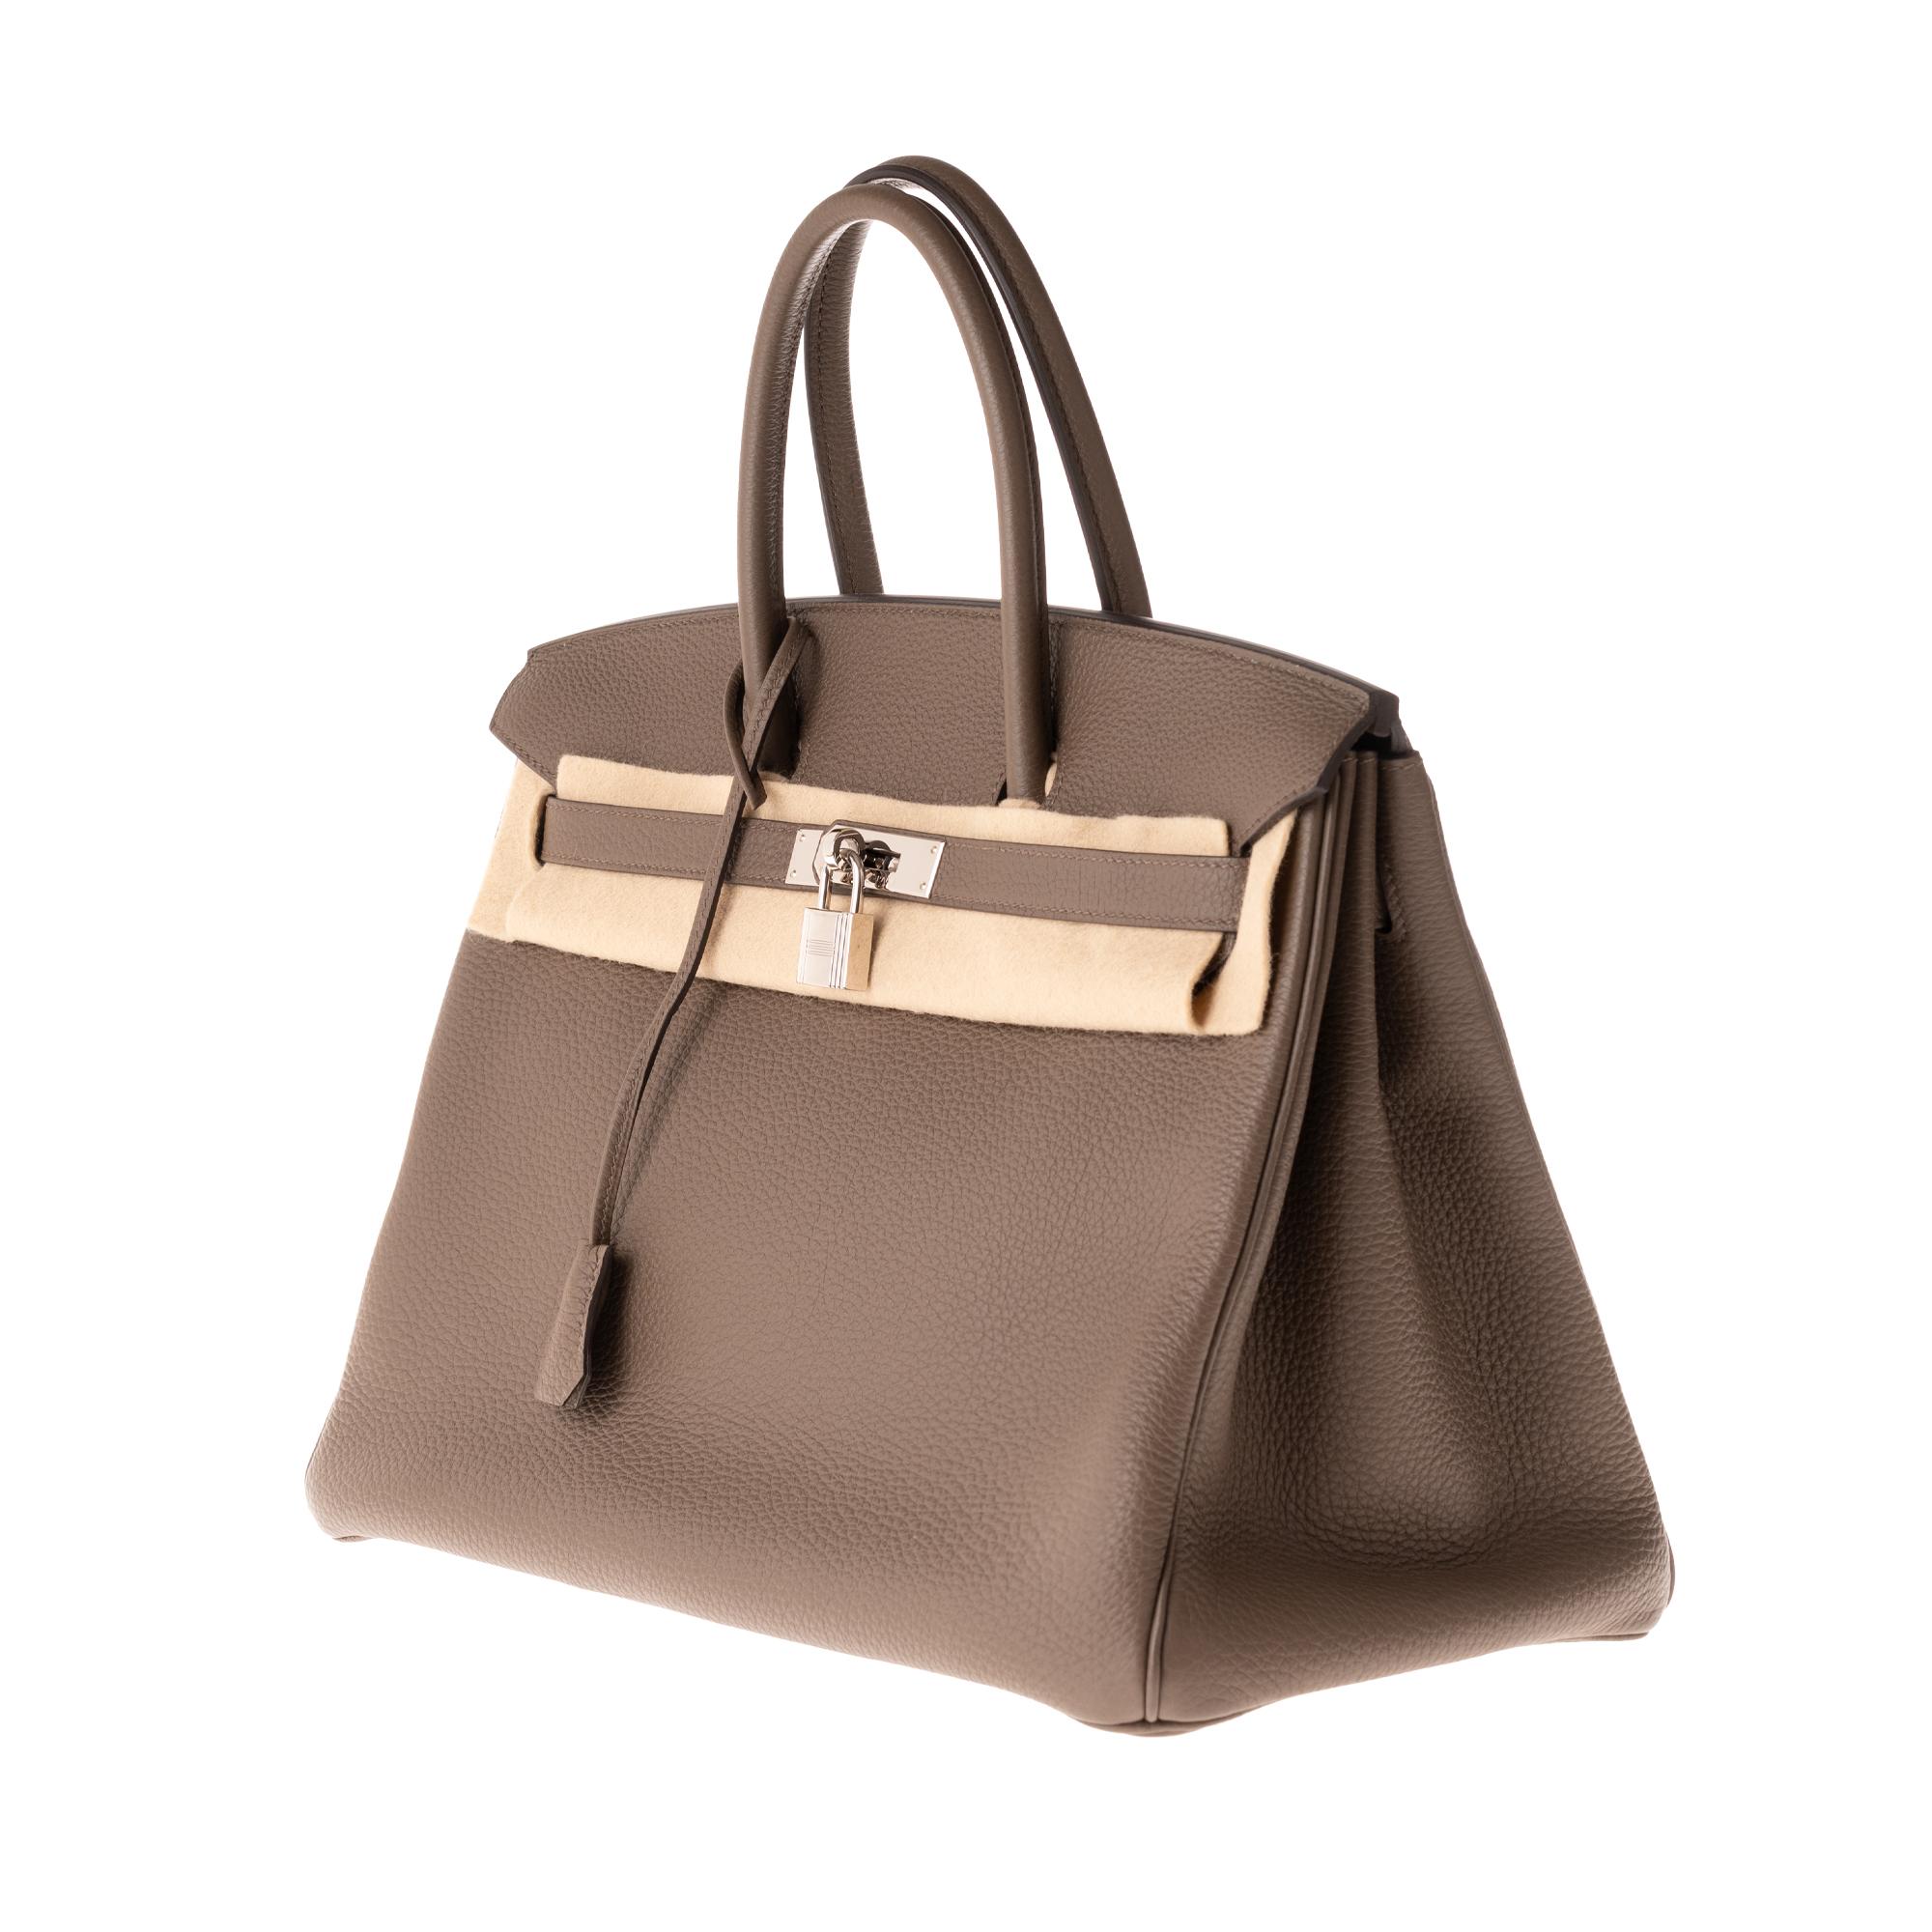 Hermès Birkin 35 Handtasche aus Togo-Leder in Taupe-Farbe und silberner Hardware! (Braun)